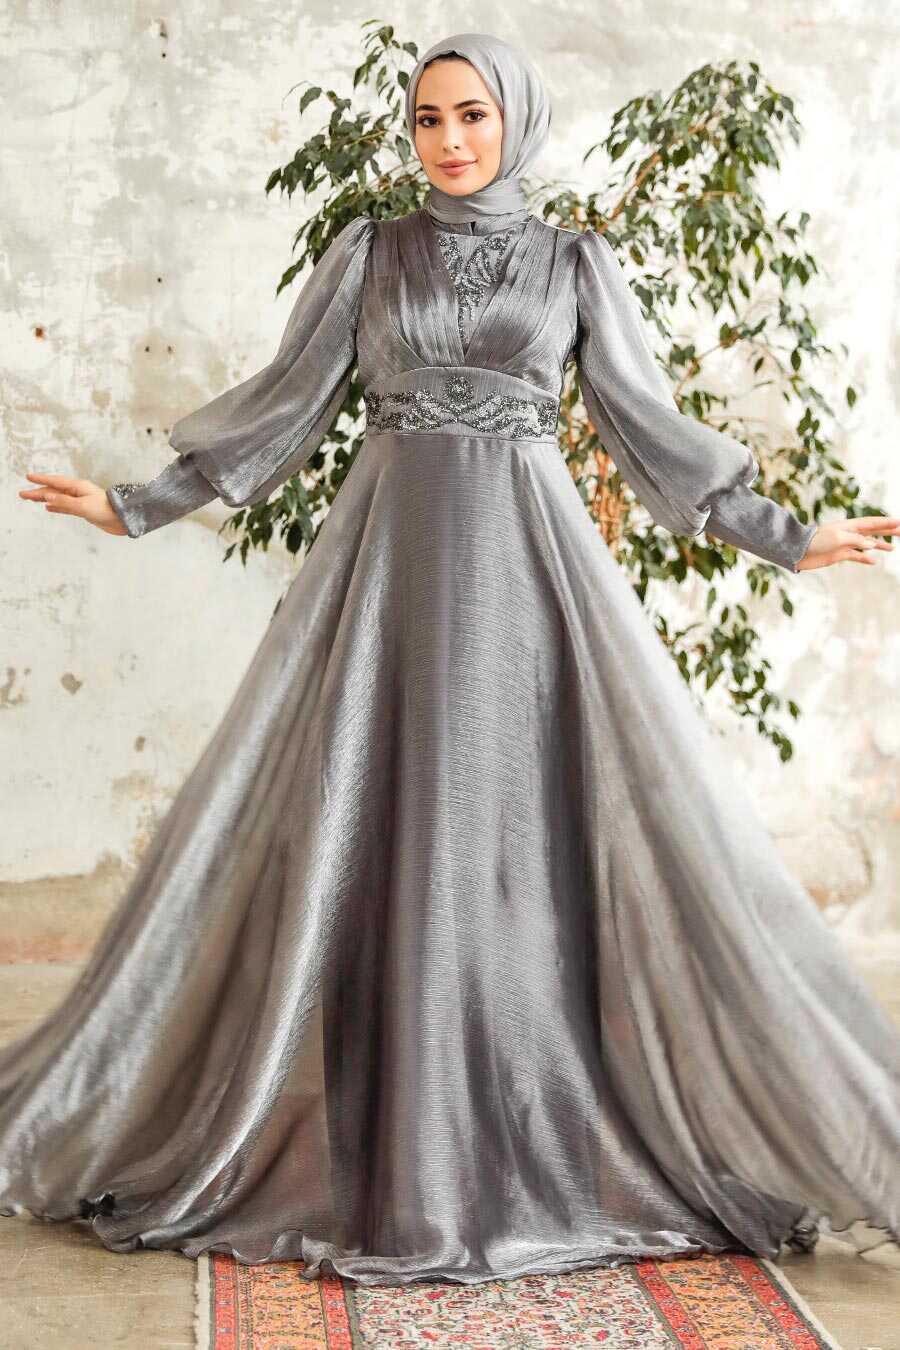 Neva Style - Stylish Grey Modest Islamic Clothing Prom Dress 3753GR